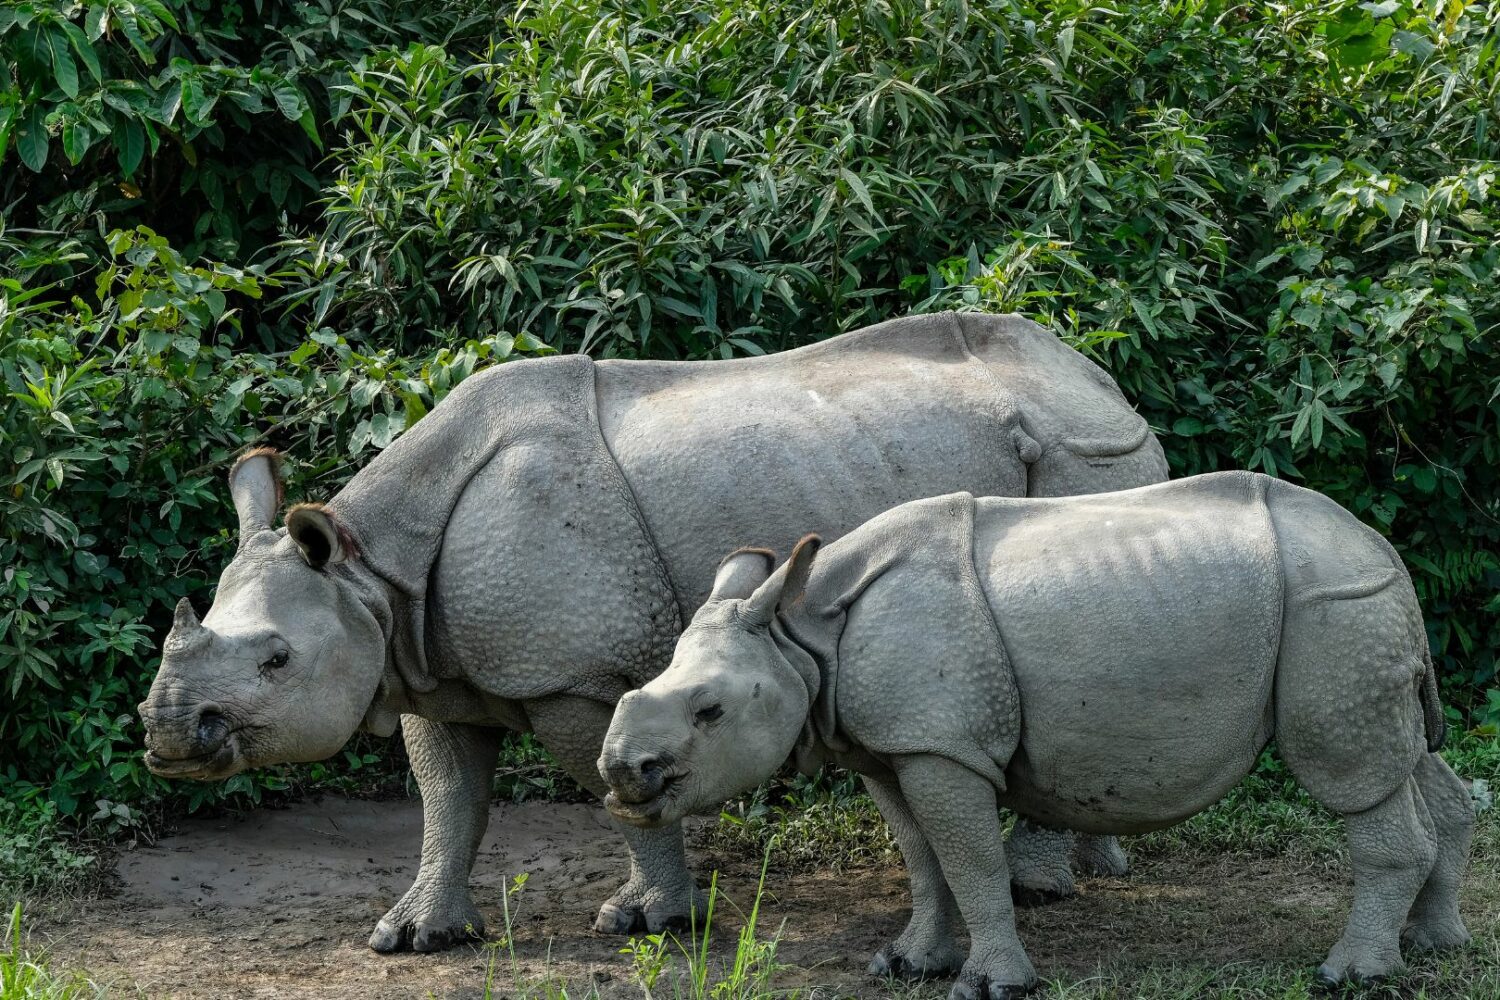 One horned rhino in Kaziranga National Park